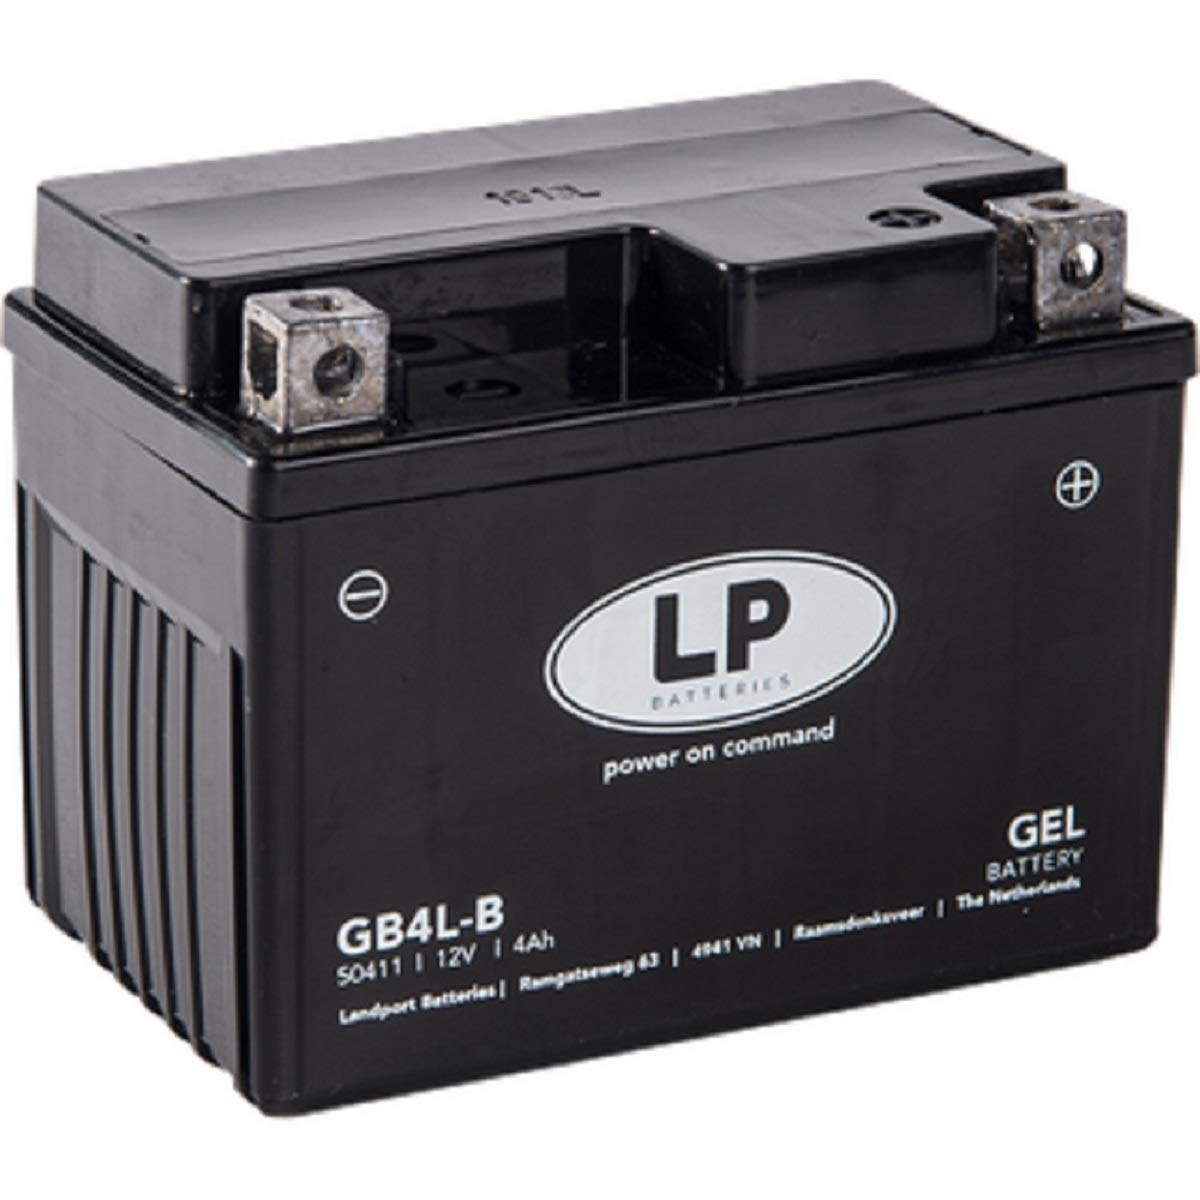 Landport Gel Roller- u. Motorradbatterie GB4L-B DIN 50411G (YB4L-B Gel) von Landport